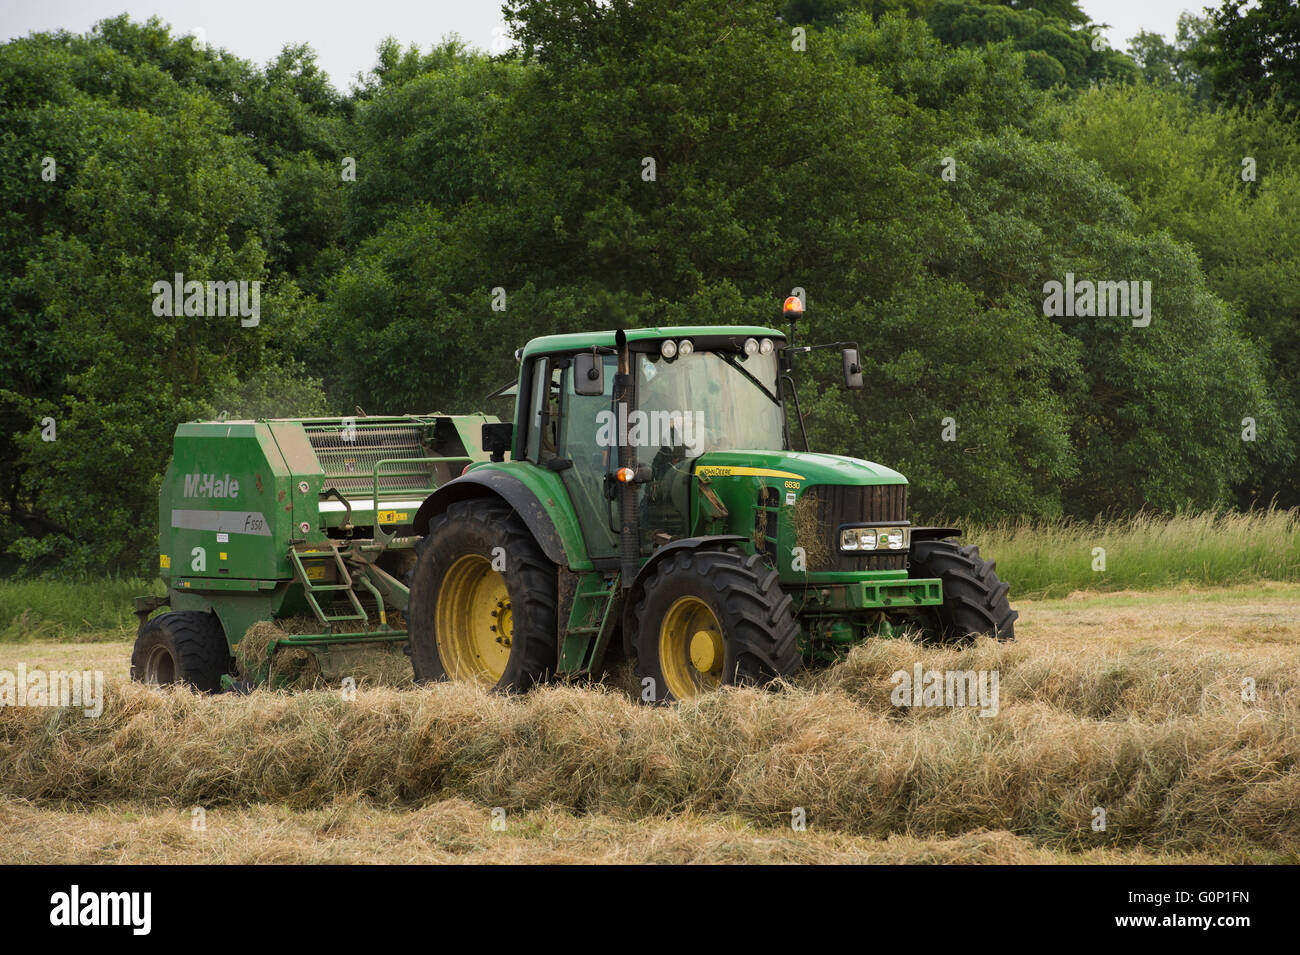 Ensilage - vert, tracteur agricole tirant une ramasseuse-presse, travaille dans un champ à grande Ouseburn, North Yorkshire, Angleterre. Banque D'Images